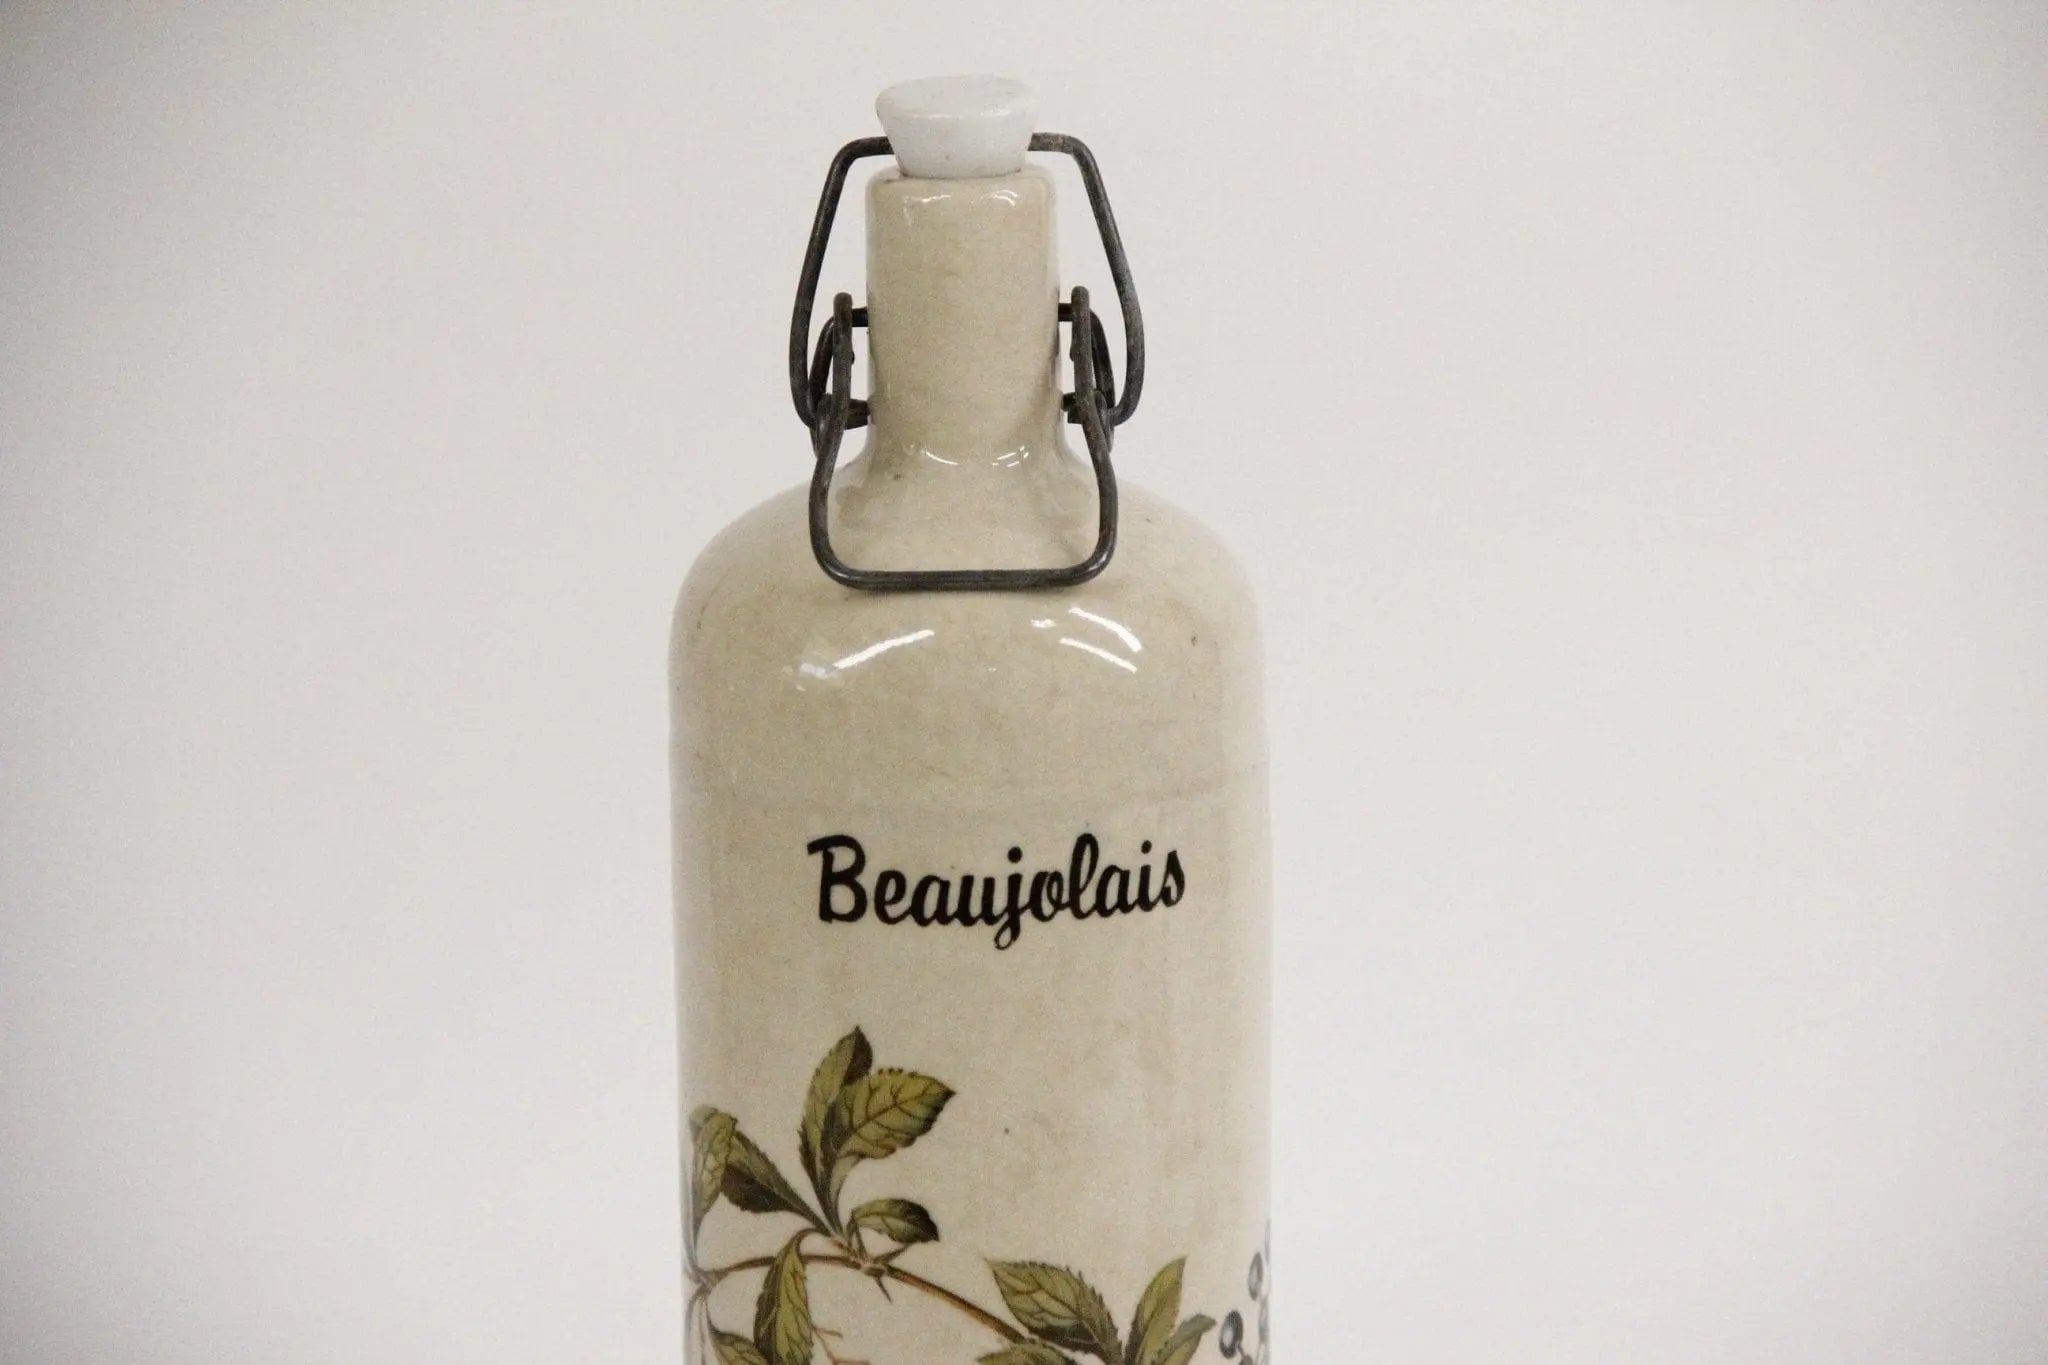 Vintage French Stoneware Bottle | Beaujolais  Debra Hall Lifestyle